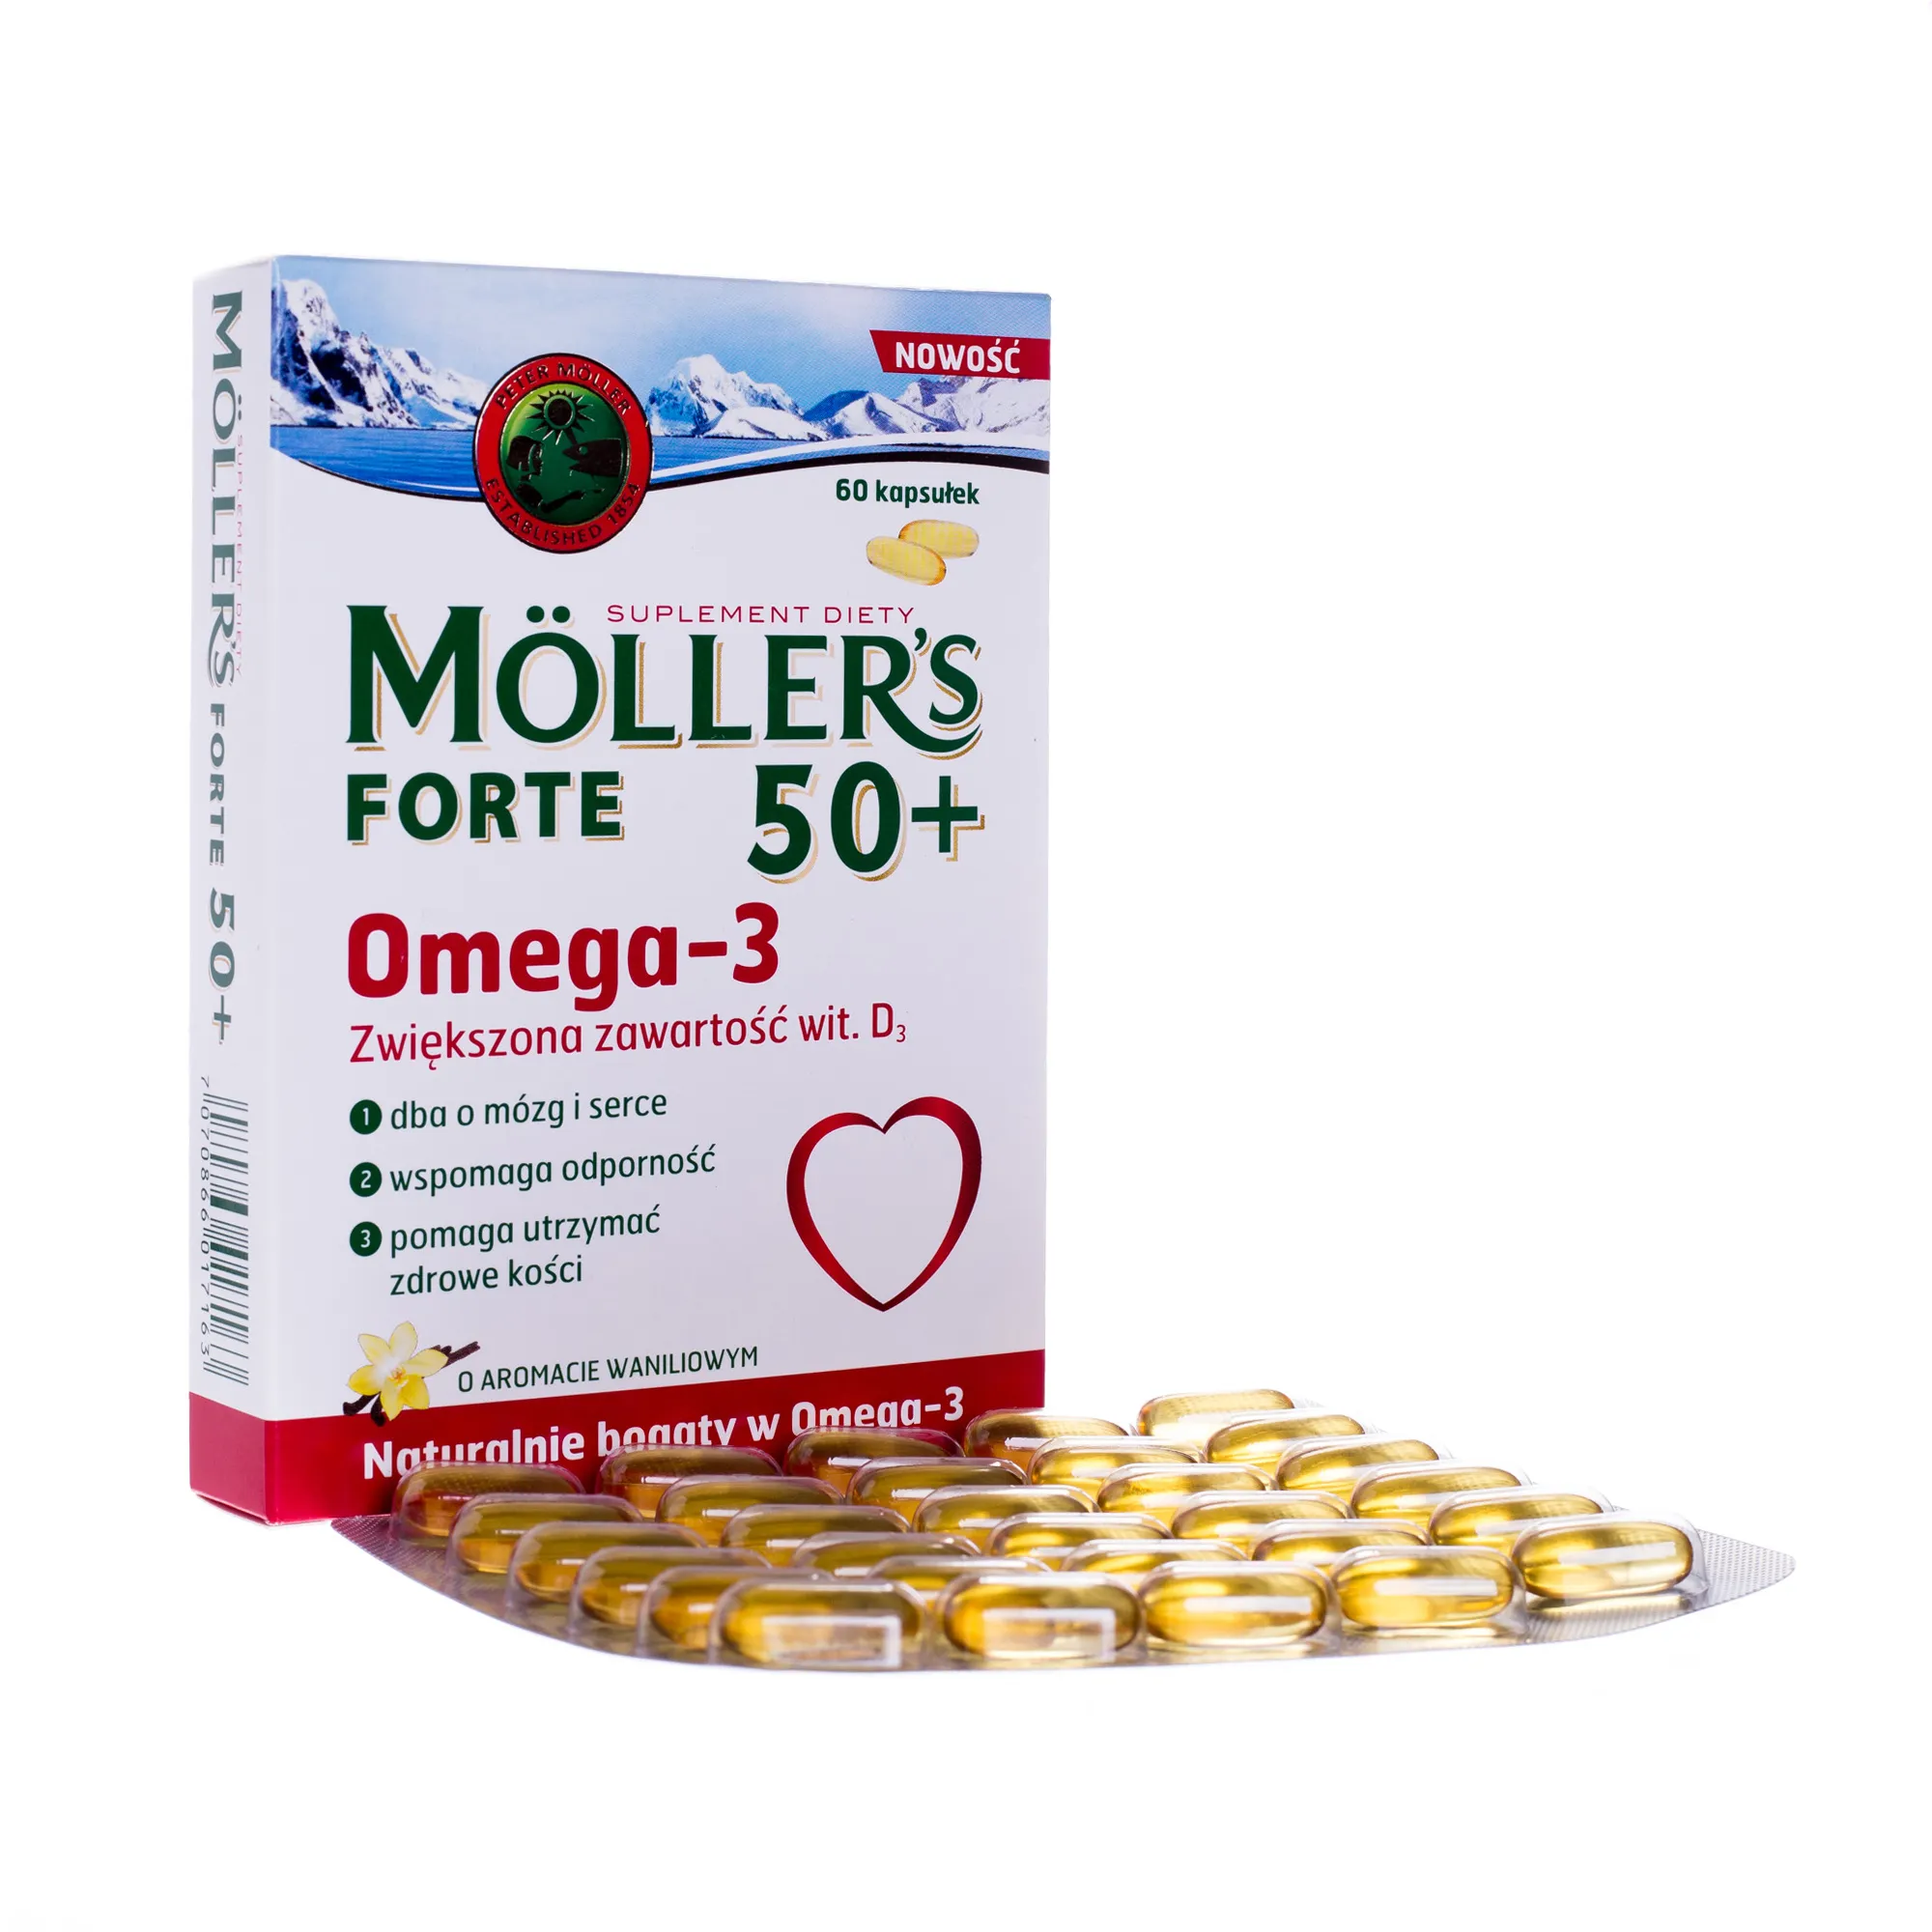 Moller's Forte 50+, Omega-3, 60 kapsułek 